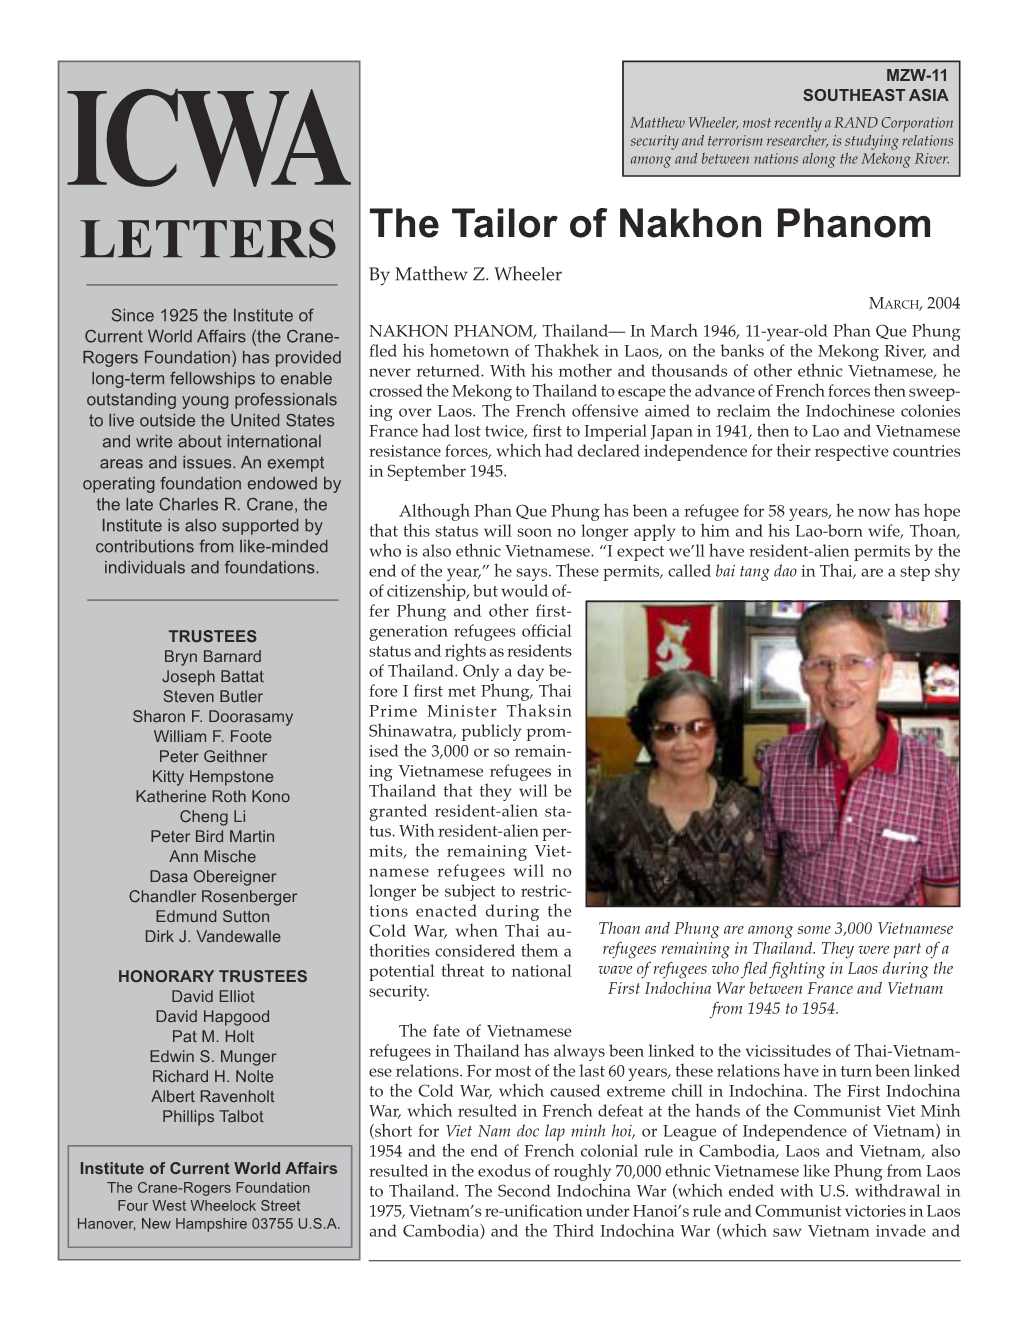 The Tailor of Nakhon Phanom by Matthew Z